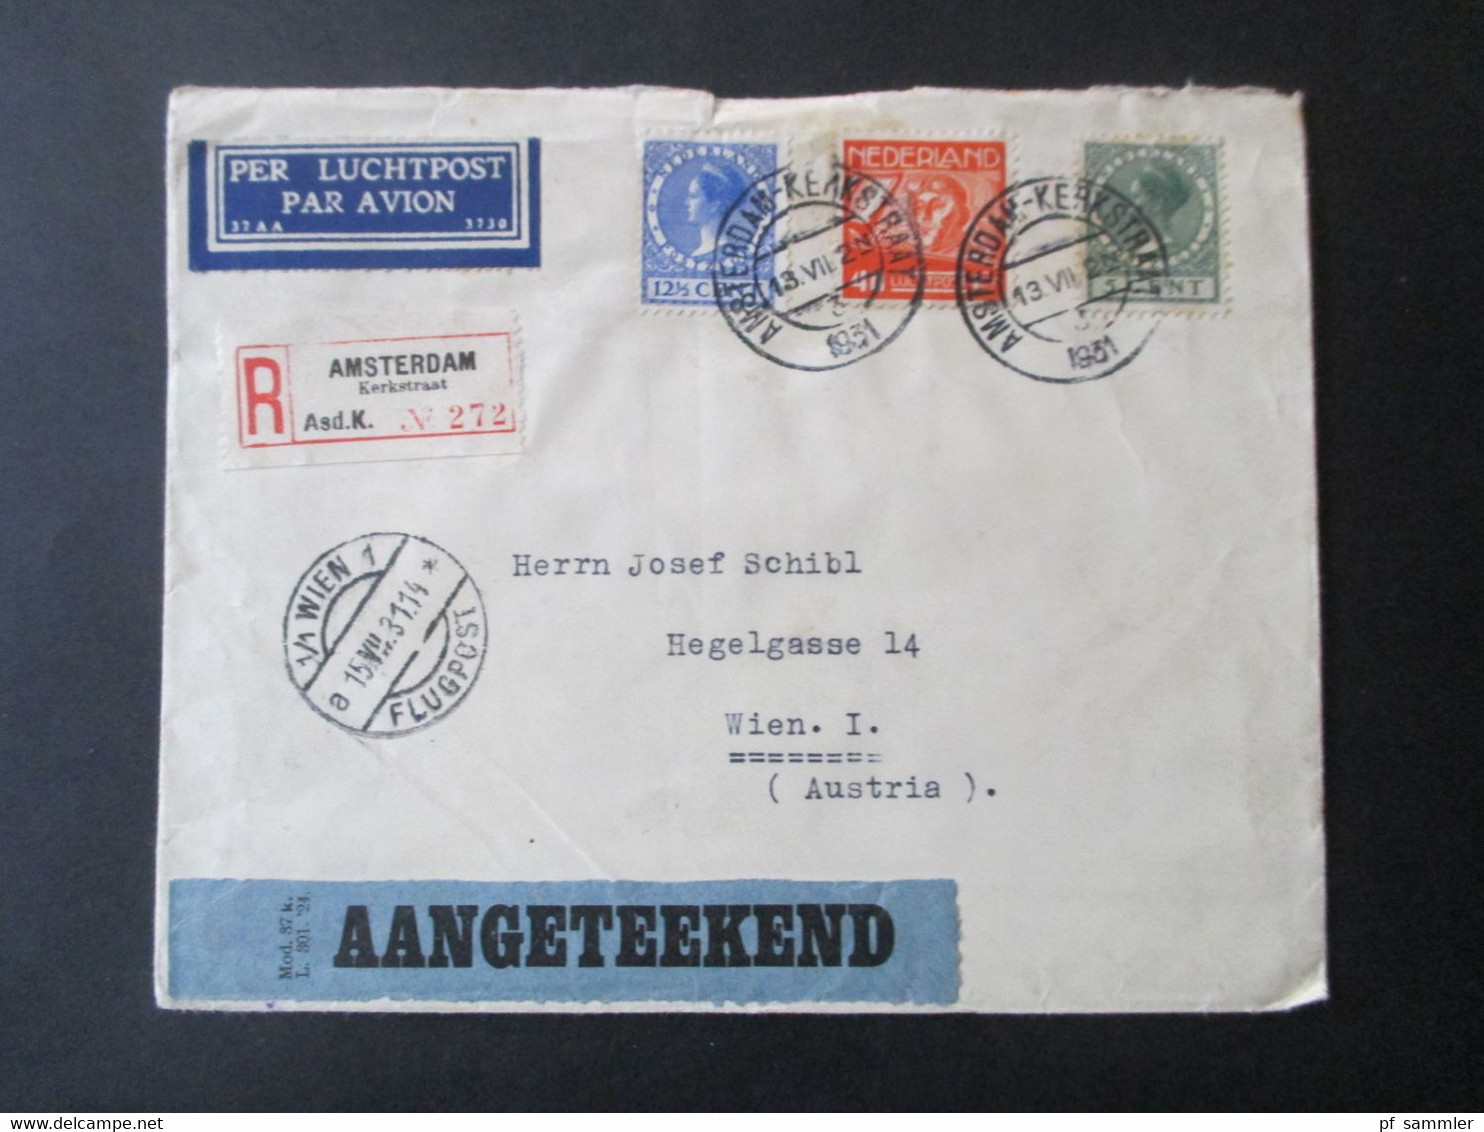 Niederlande 1931 Einschreiben Luftpost Amsterdam Kerkstraat - Wien Rücks. Aufkleber K.L.M. Royal Dutch Air Lines Holland - Lettres & Documents